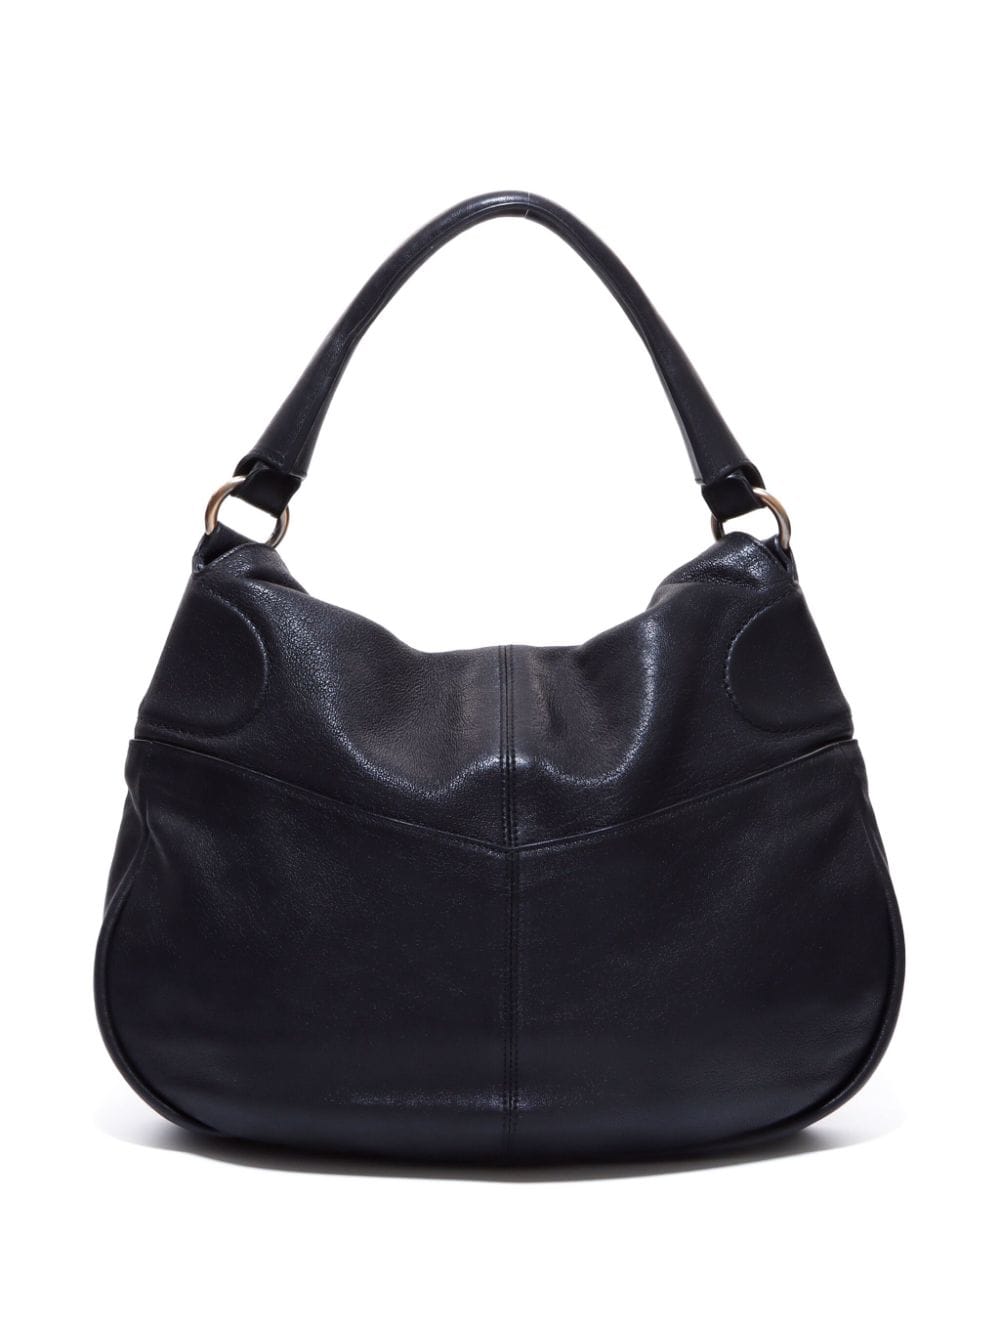 Pre-owned Ferragamo Gancini Leather Shoulder Bag In Black